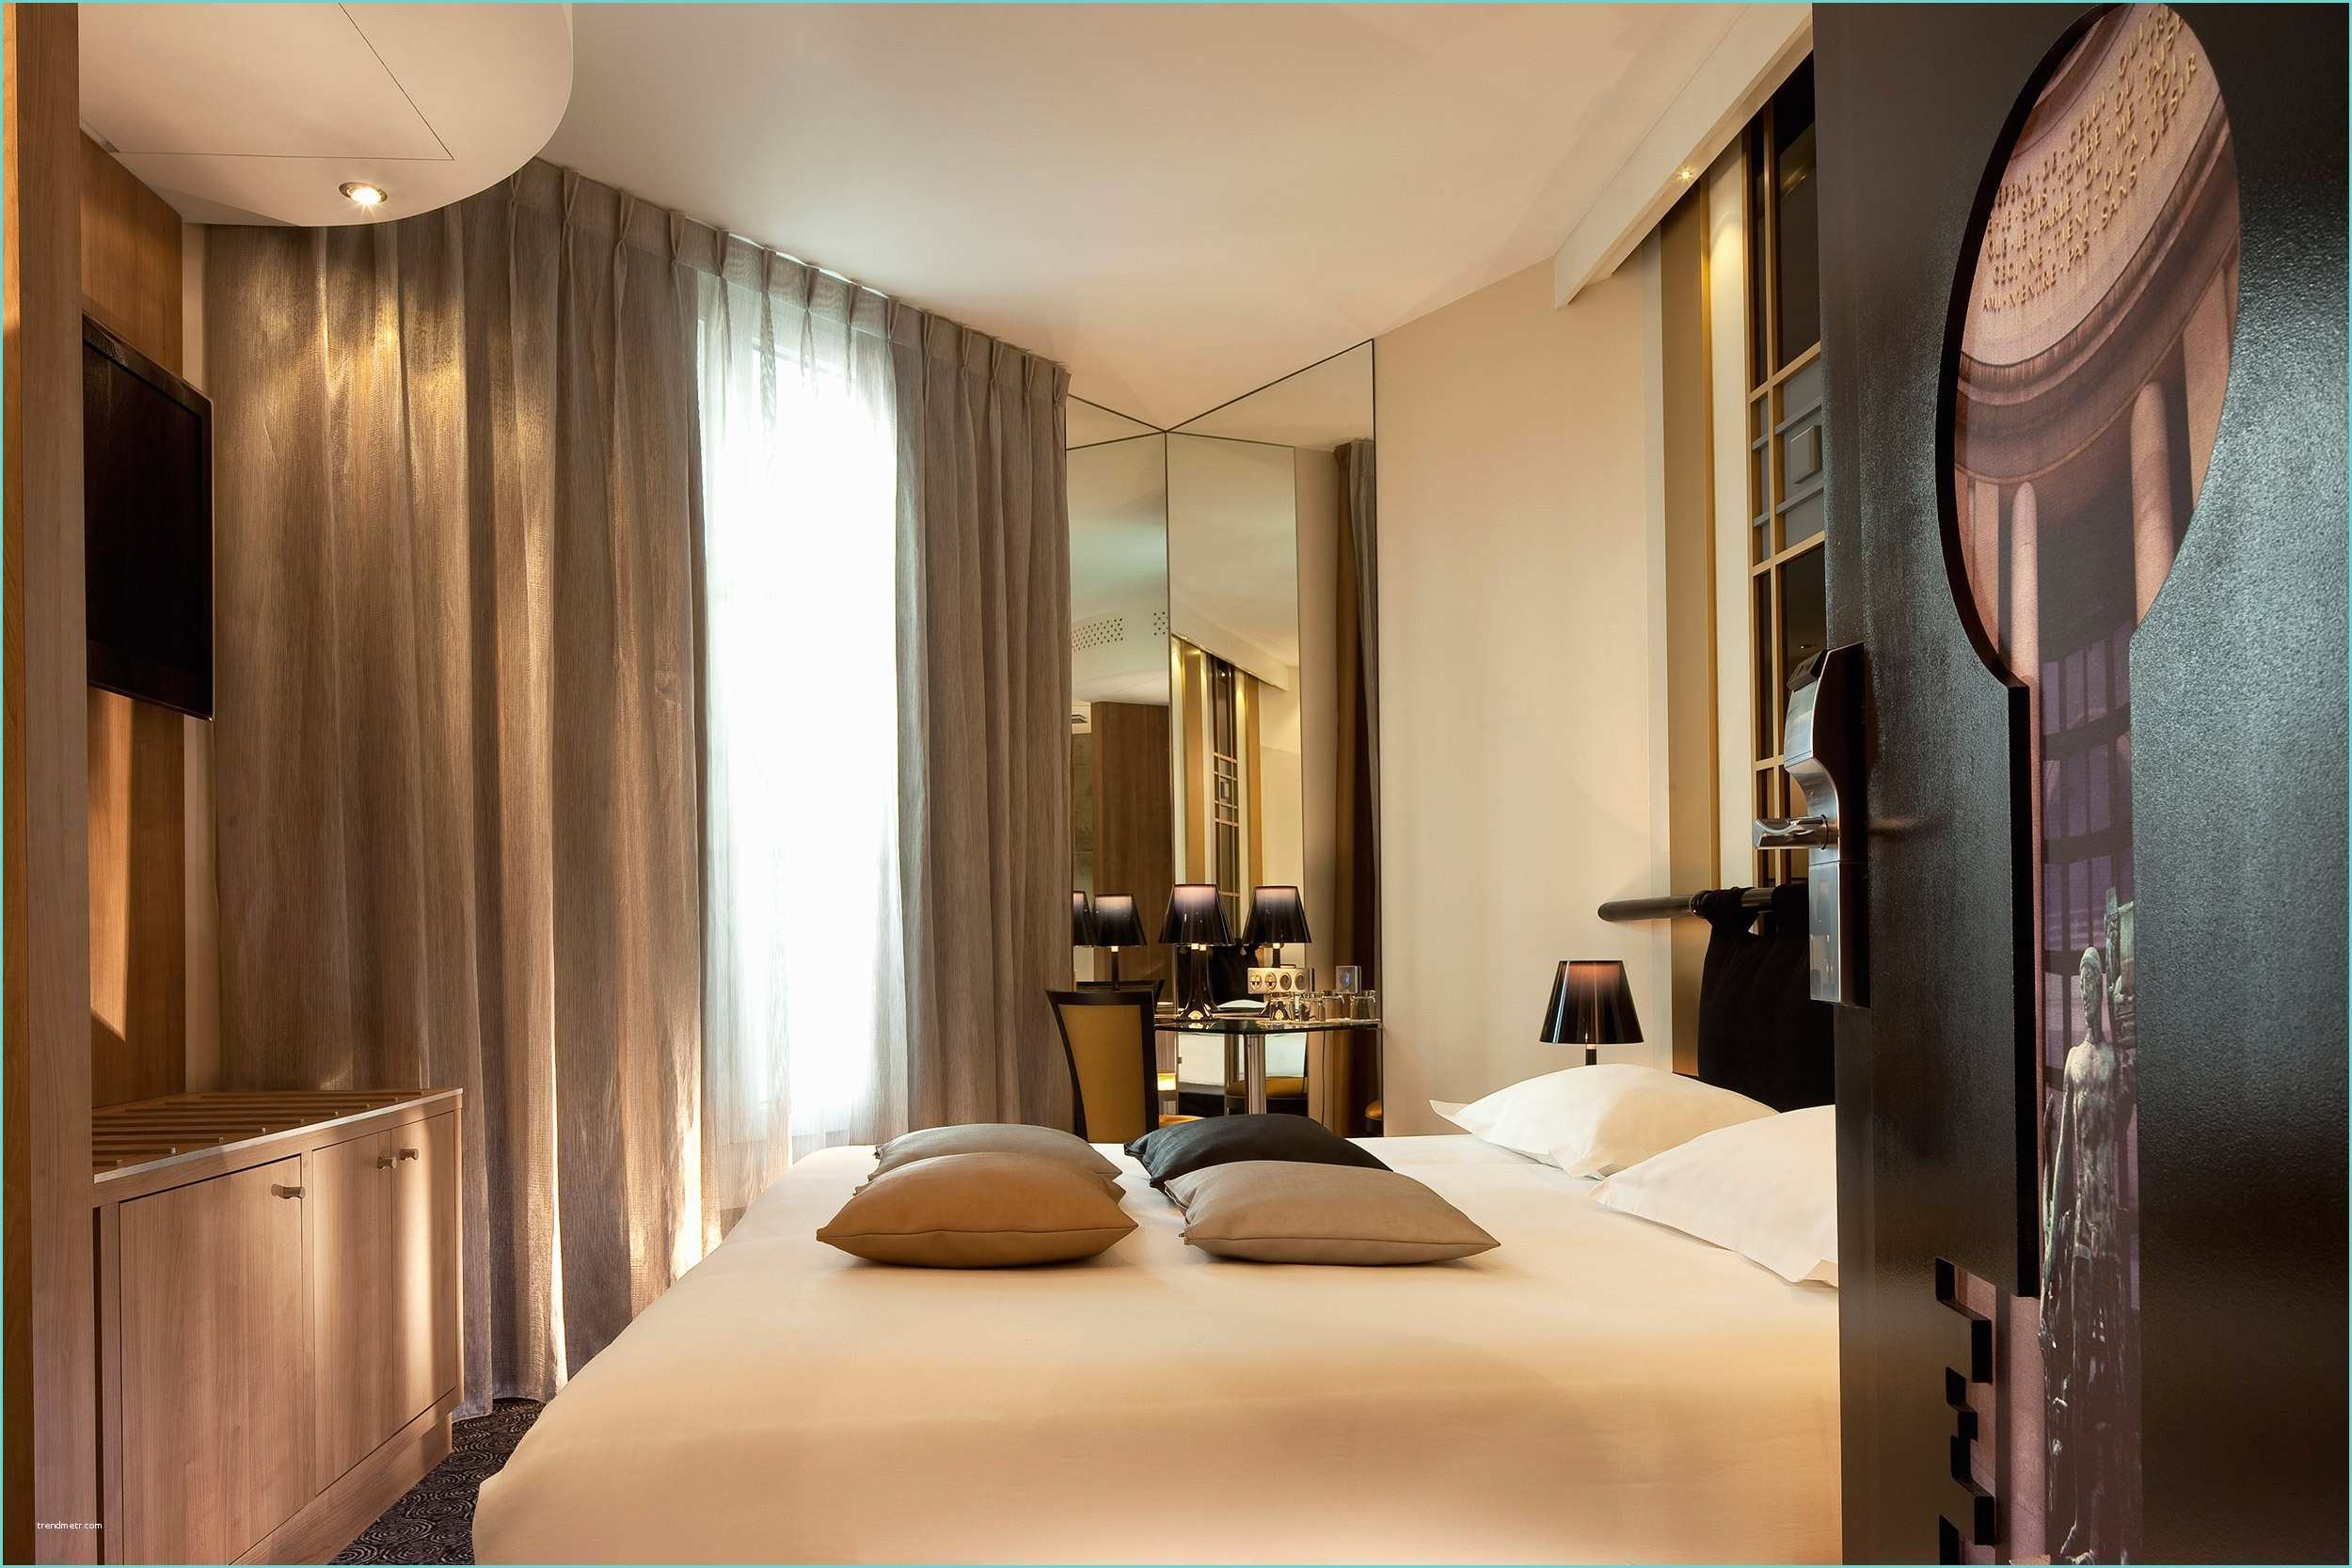 Les Plus Belles Suites Parentales Chambres Archive Hotel Design Secret De Paris Hotel